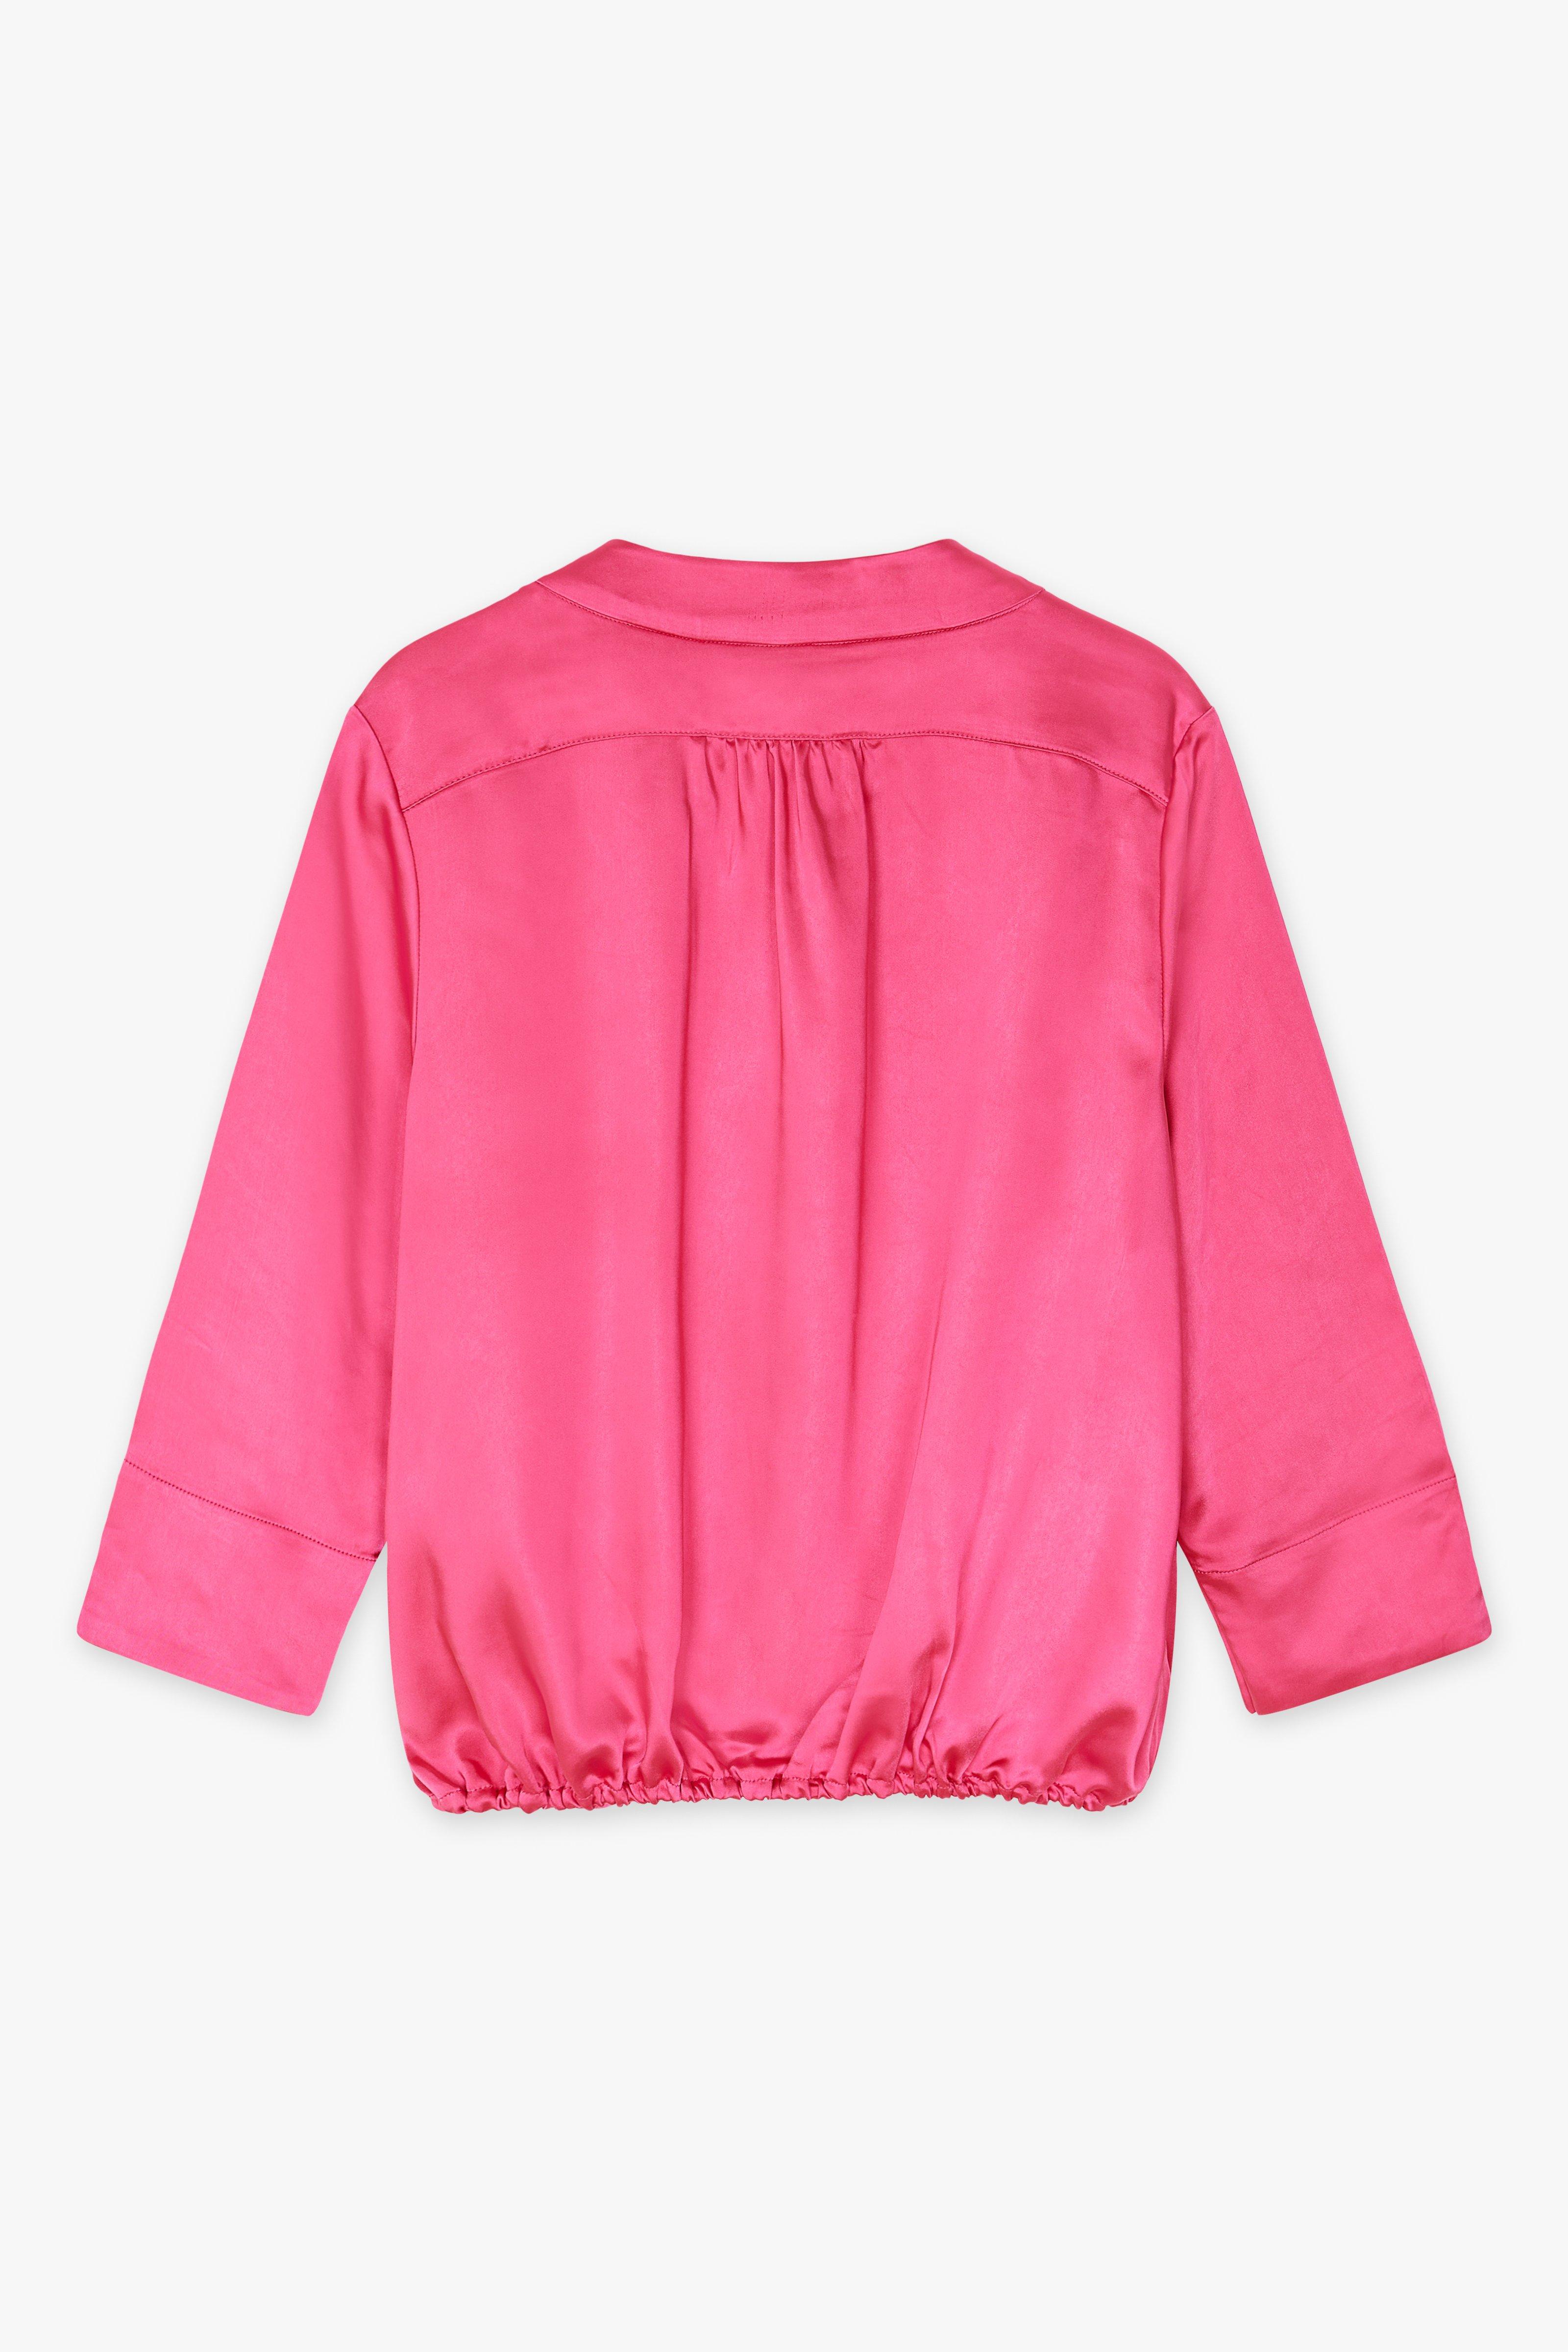 CKS Dames - LAREDINO - blouse short sleeves - pink